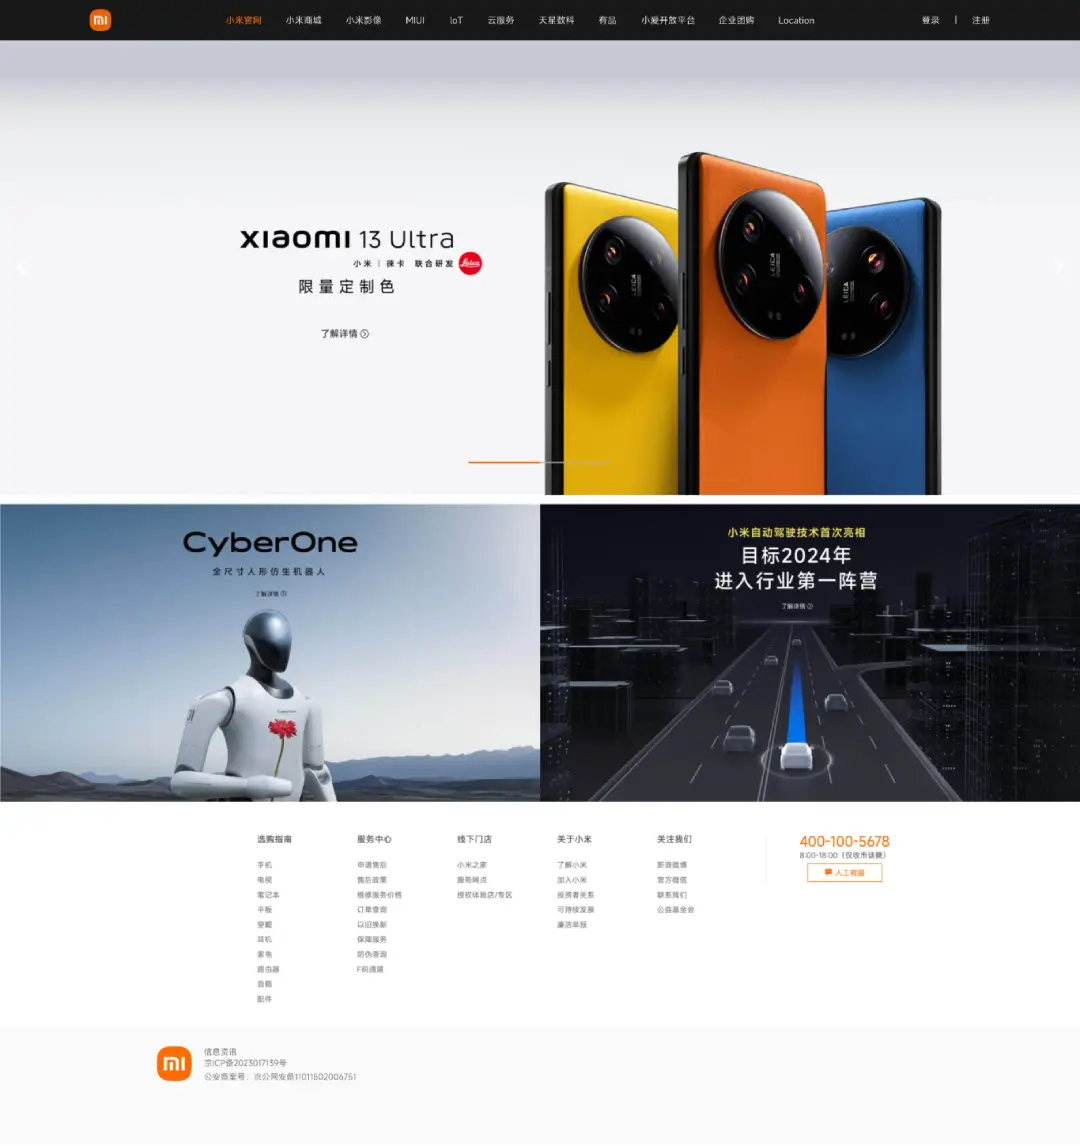 Elindult a Xiaomi elektromos autójának weboldala